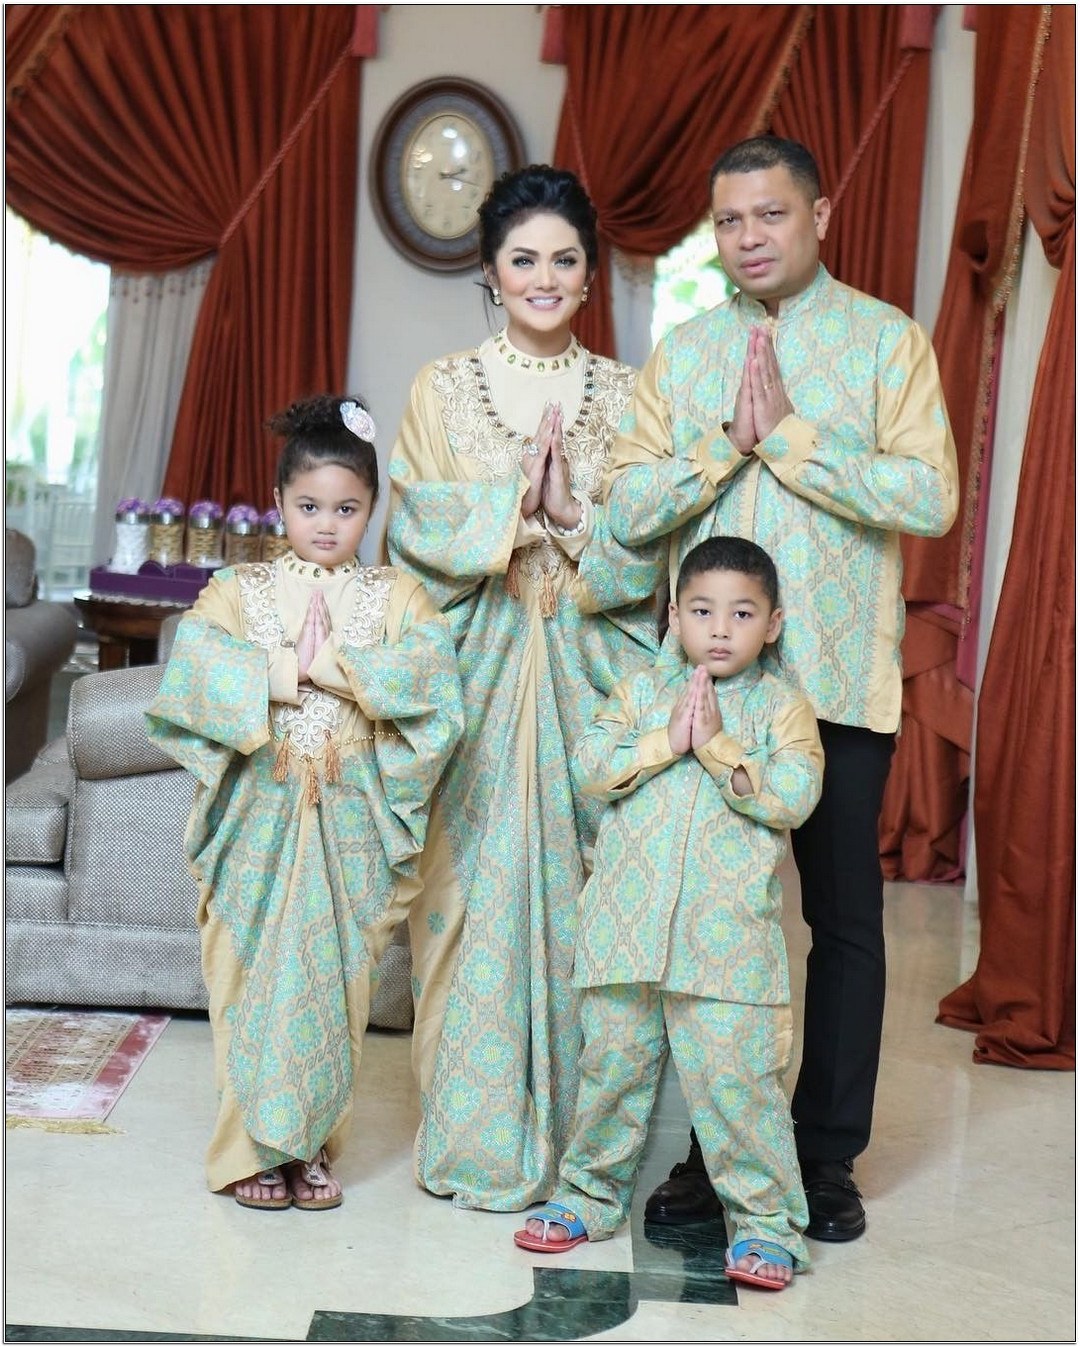 Bentuk Model Baju Lebaran Keluarga Artis S1du Model Baju Seragam Lebaran Artis